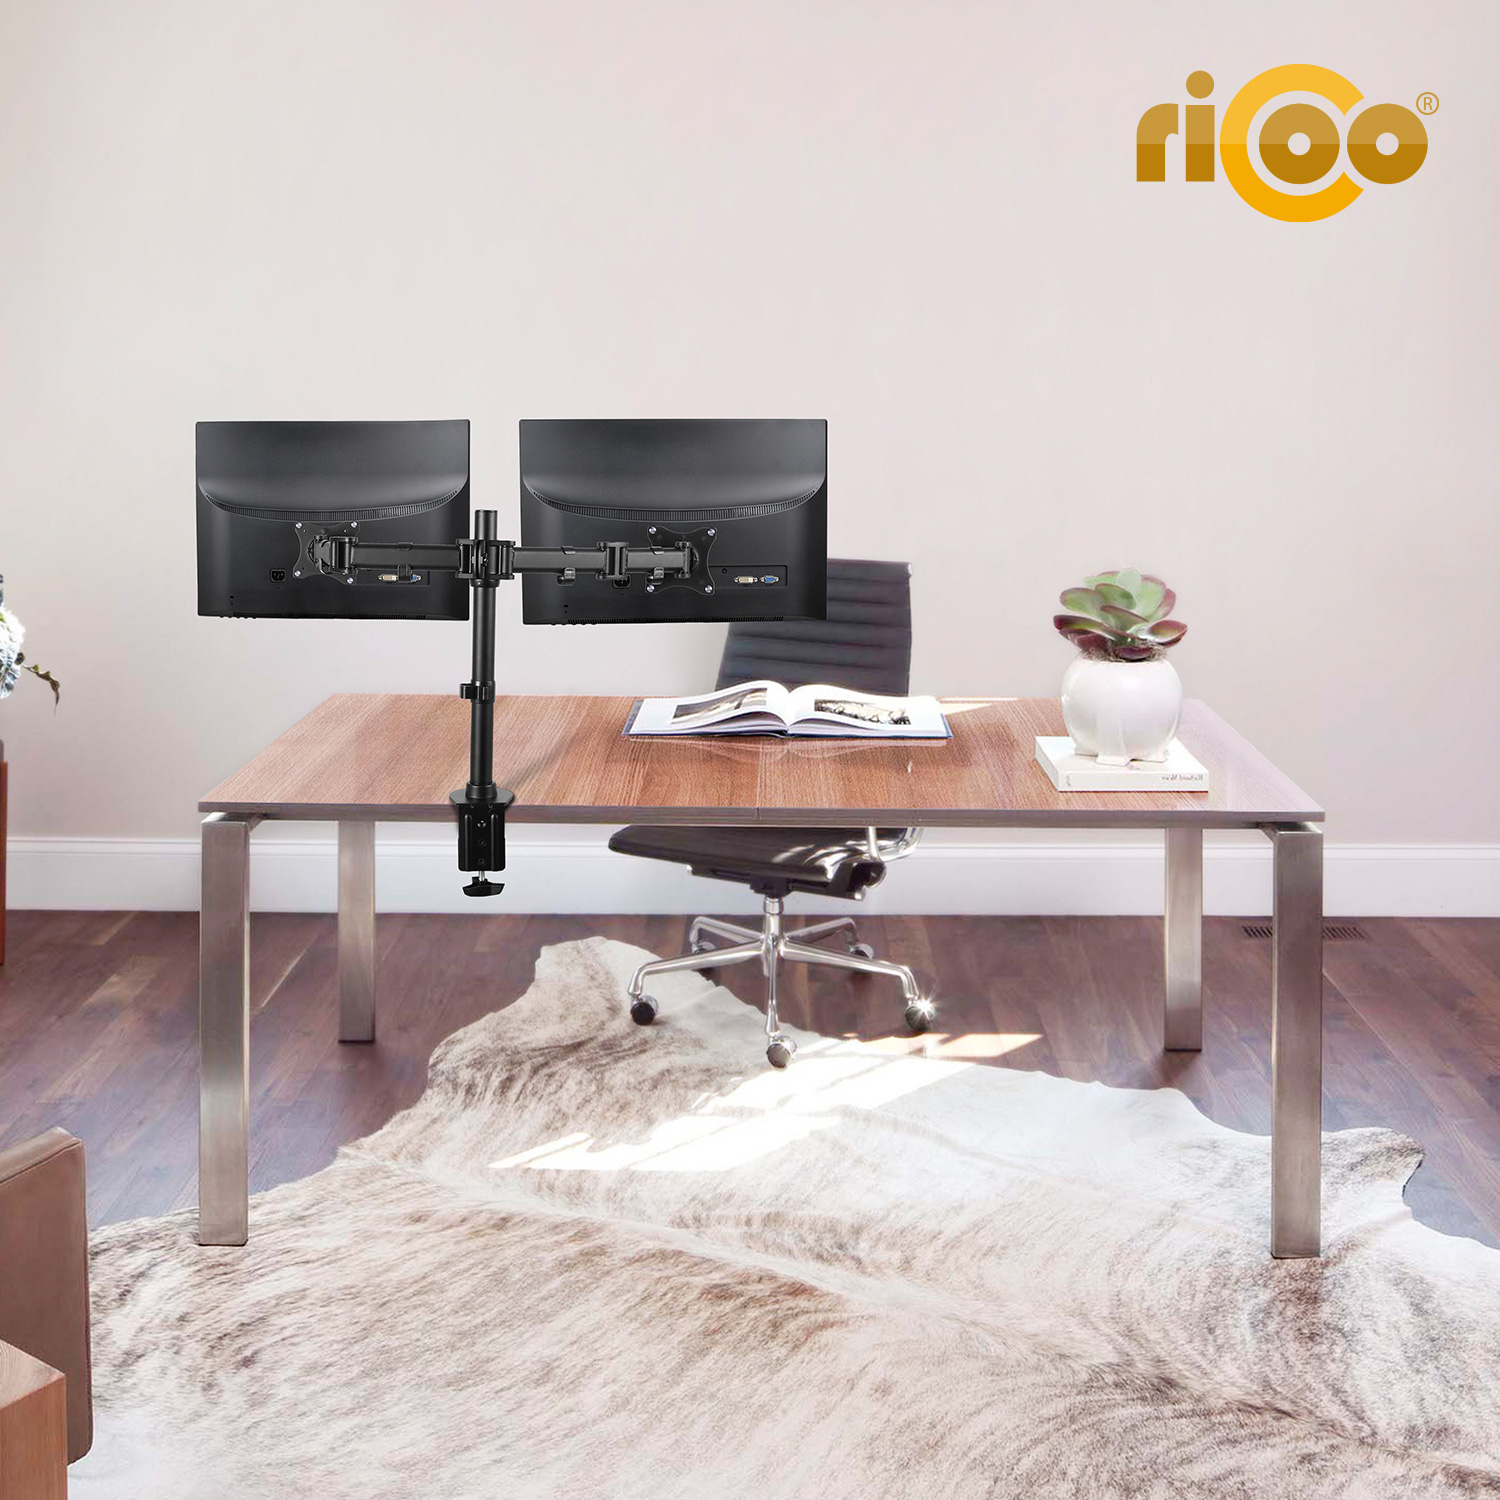 RICOO TS5811 Monitor schwarz Tischhalterung